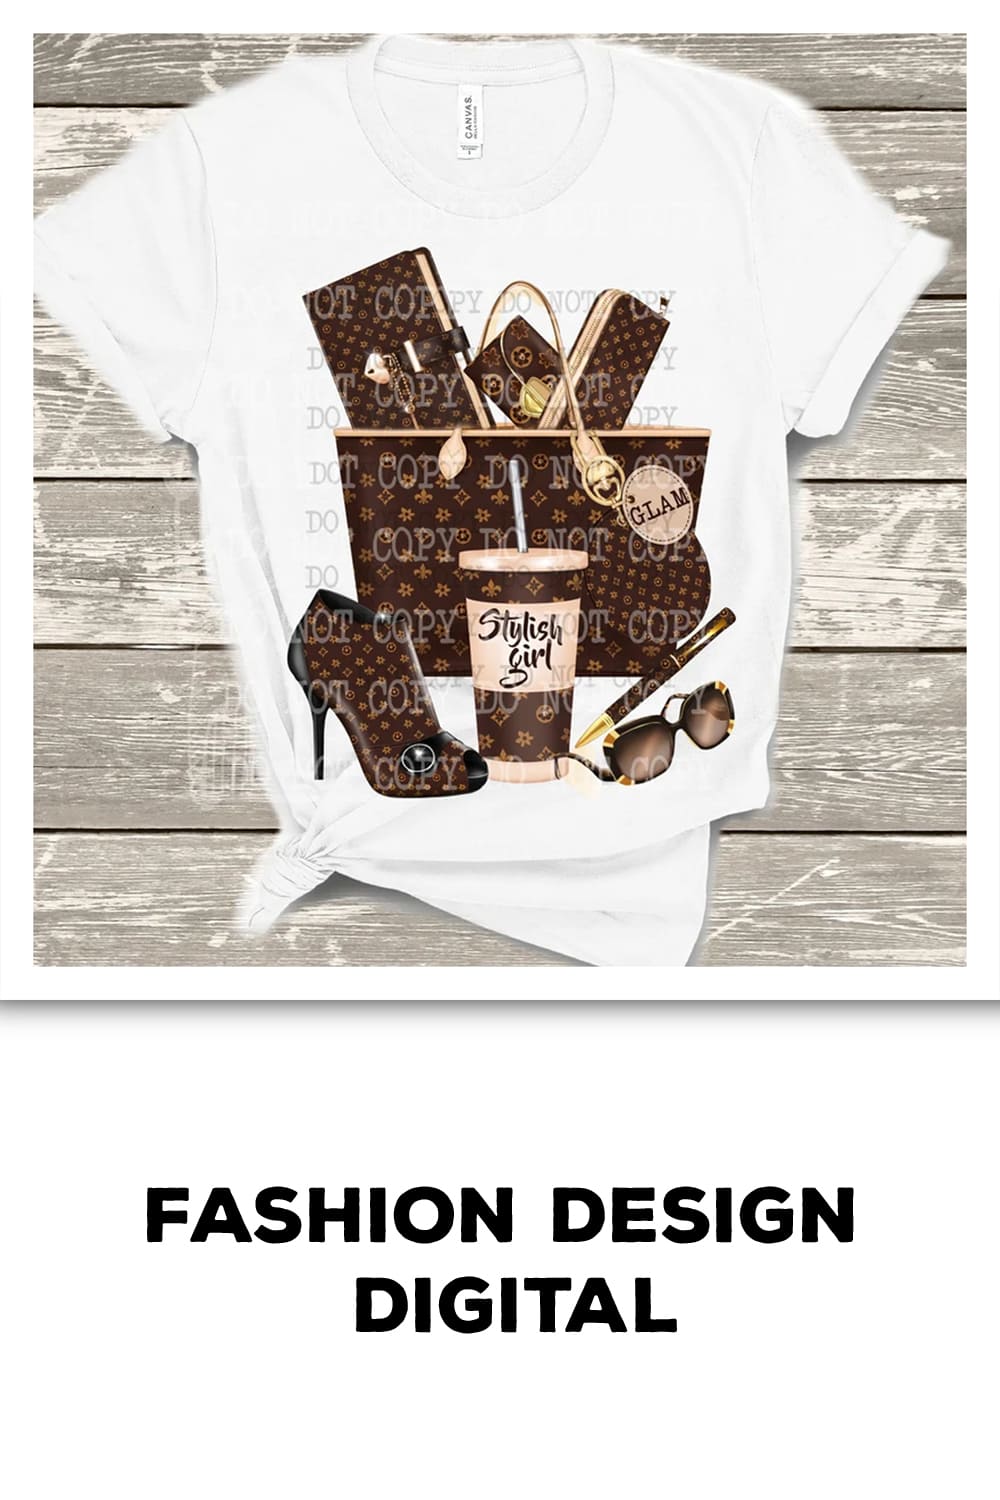 Fashion Design Digital Download pinterest image.